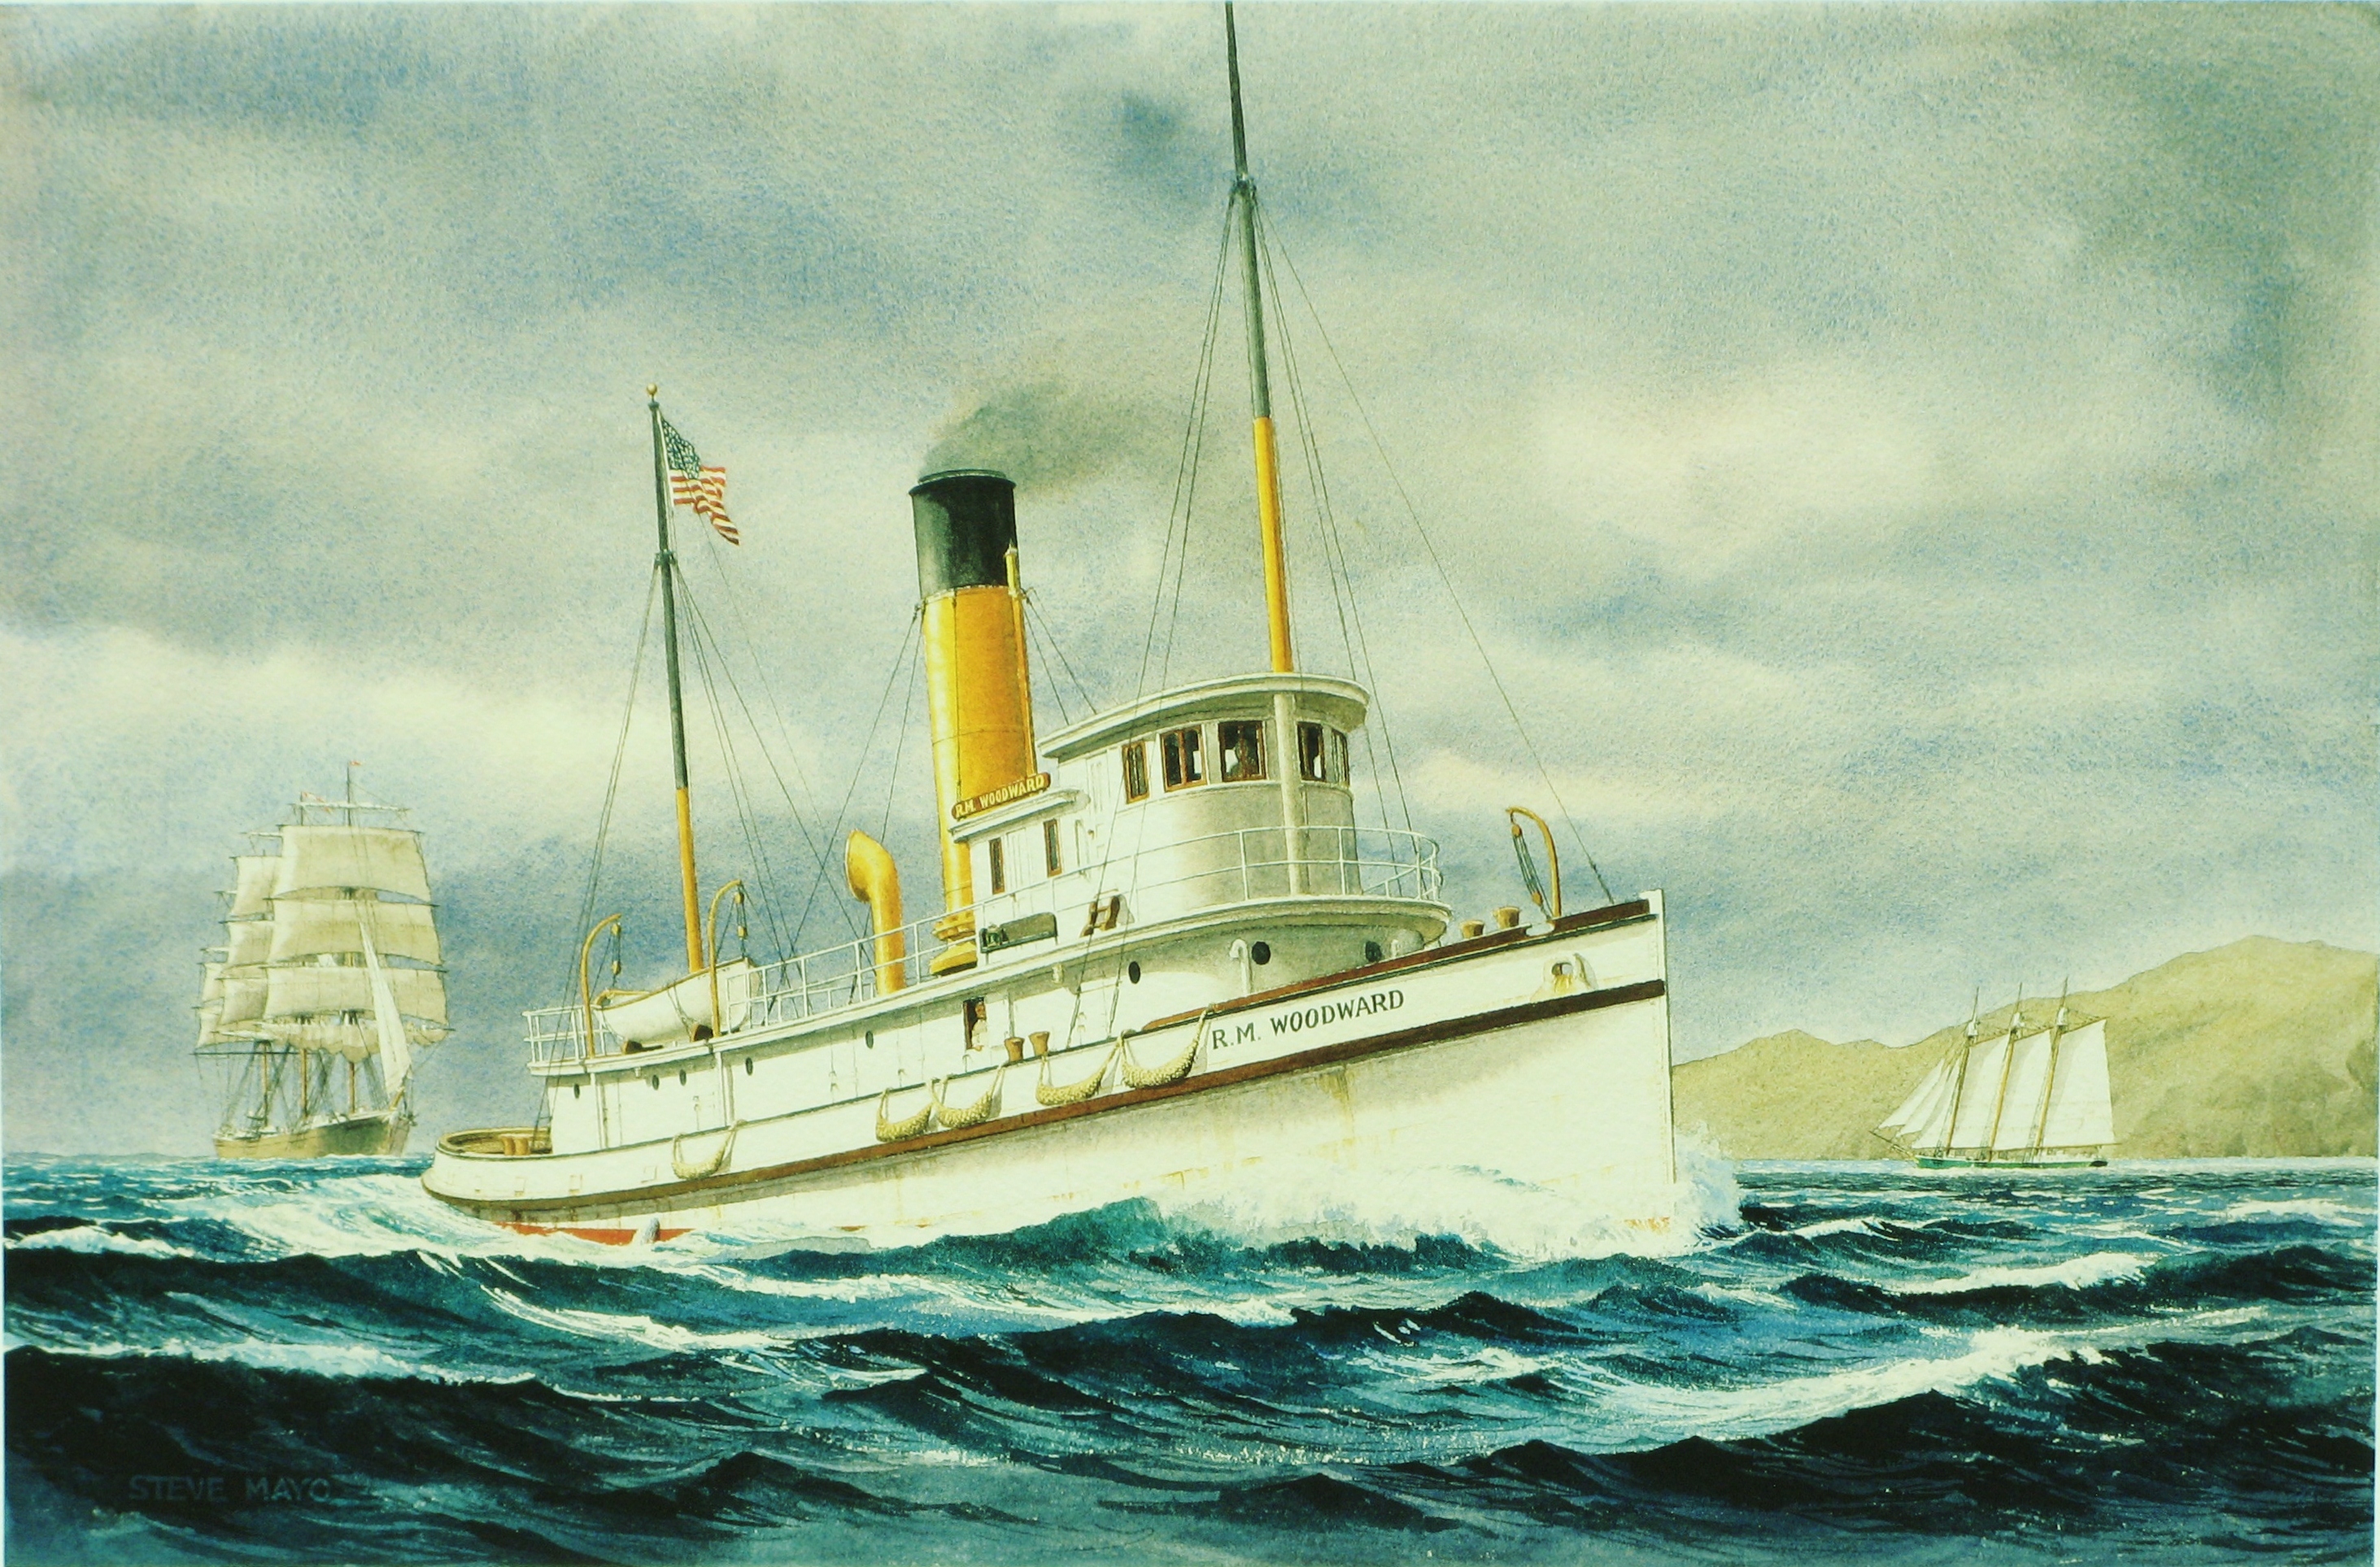 R.M. WOODWARD Boarding steamer